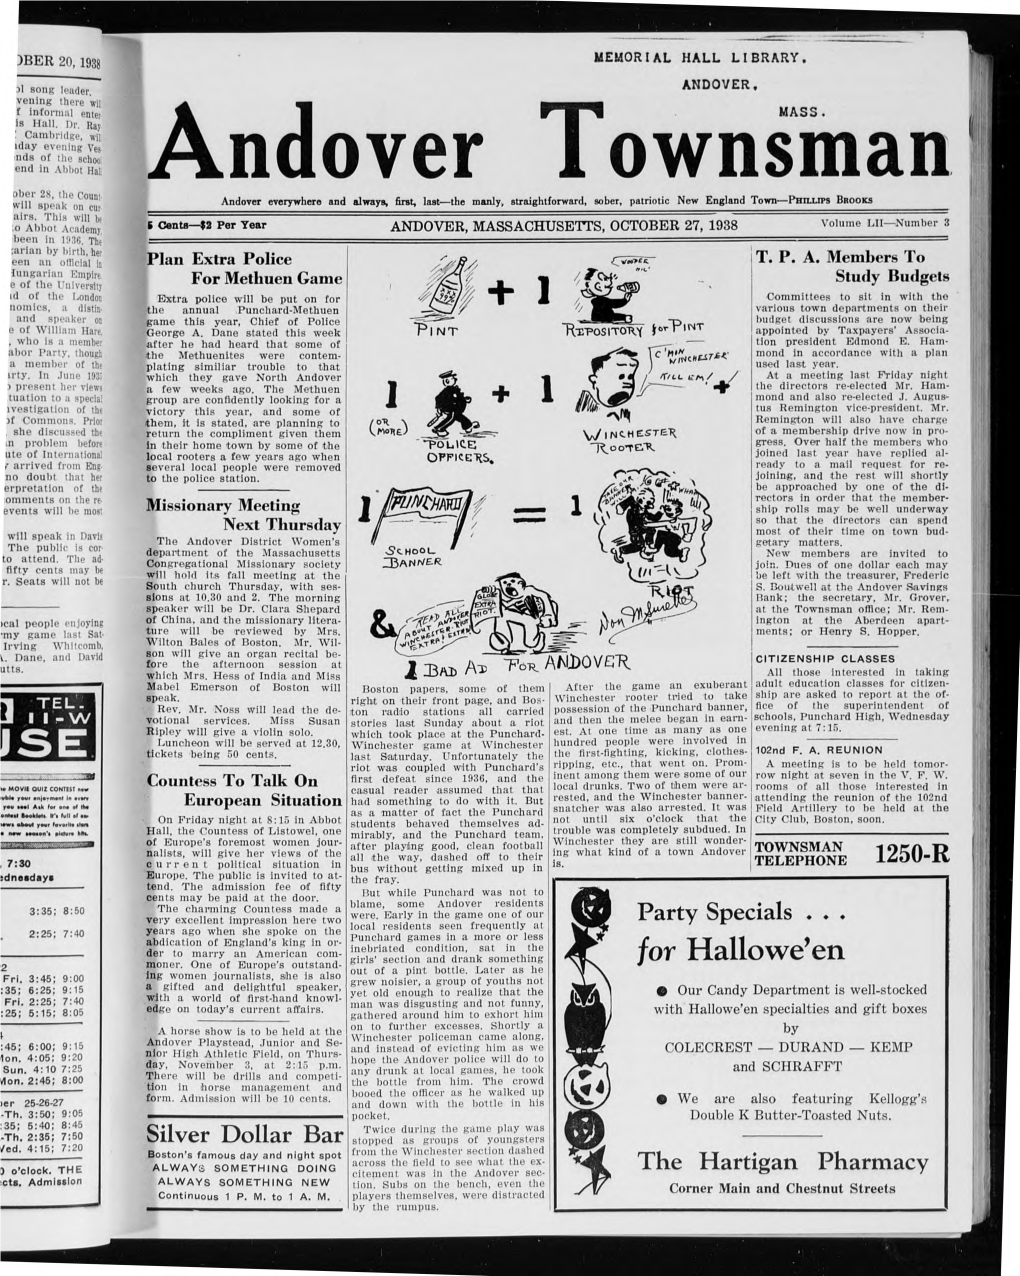 Andover Townsman, 10/27/1938